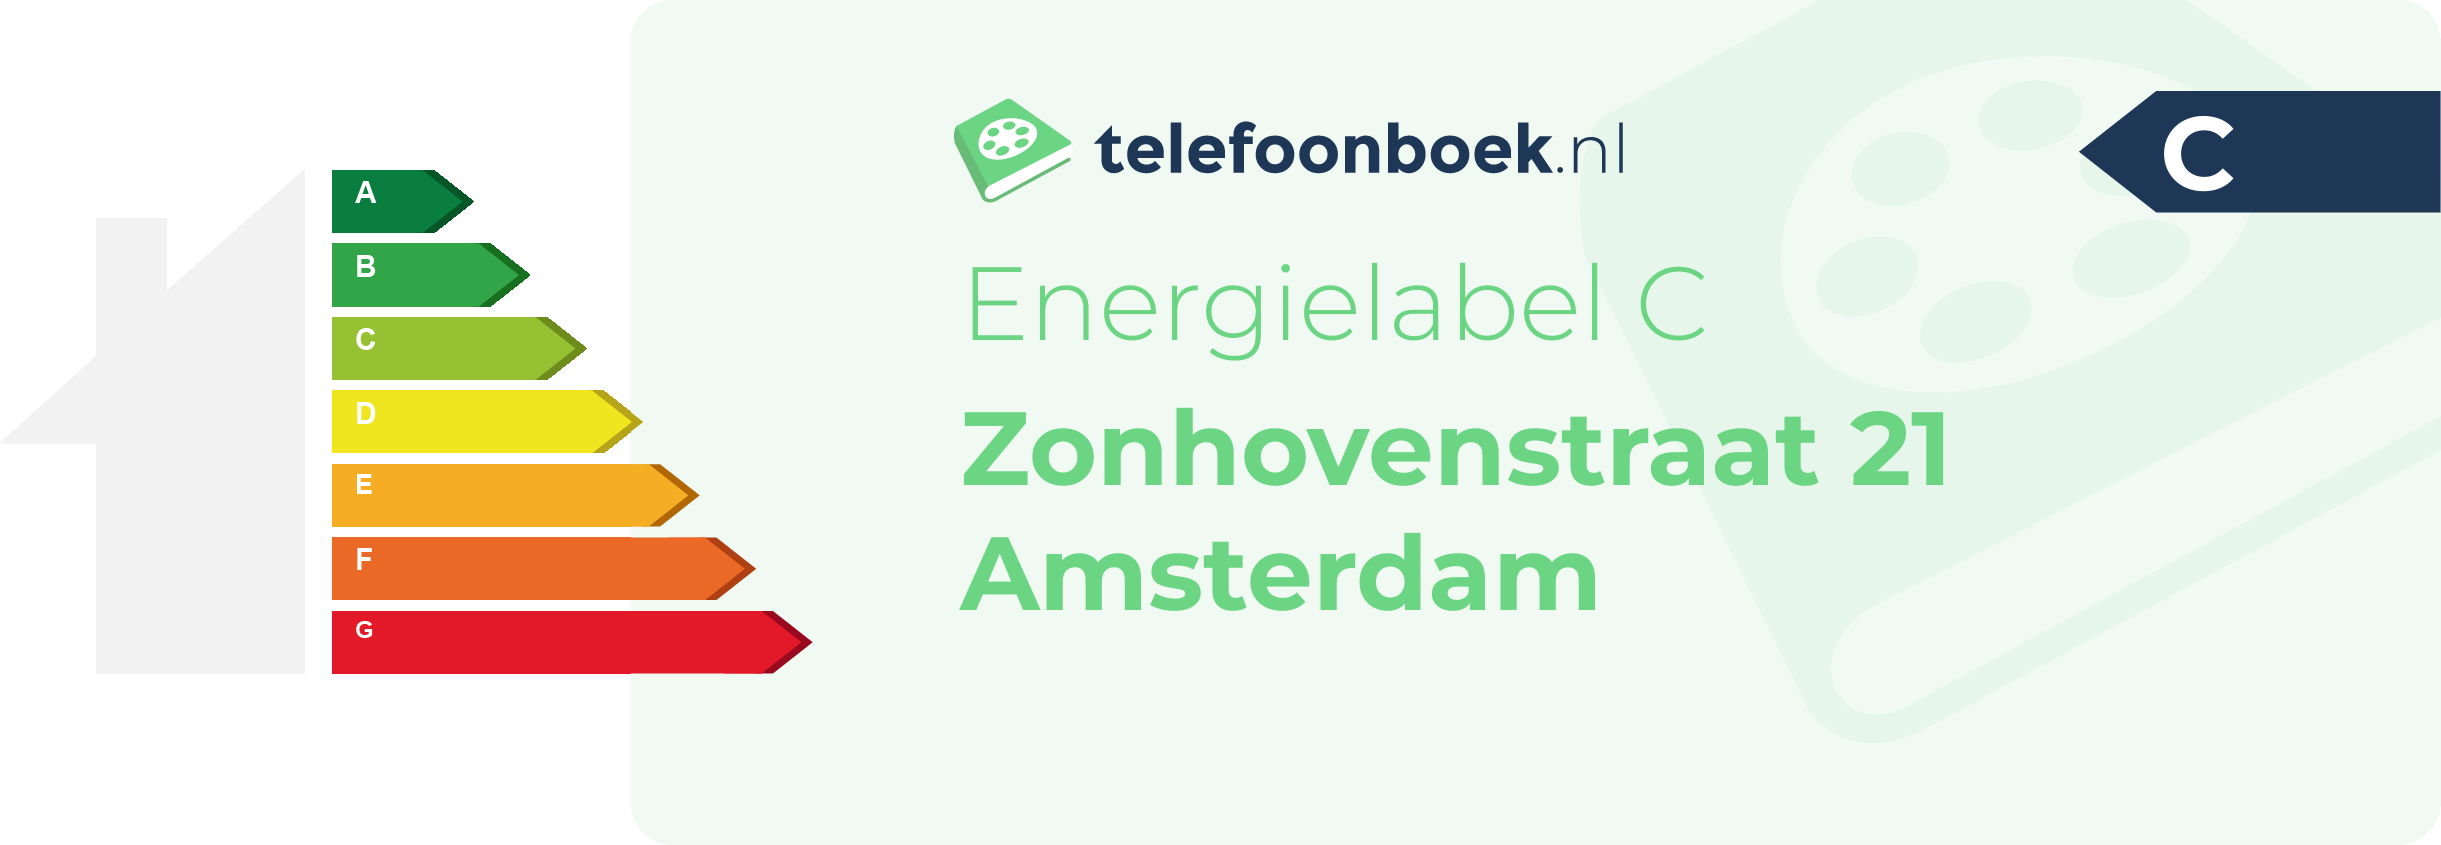 Energielabel Zonhovenstraat 21 Amsterdam